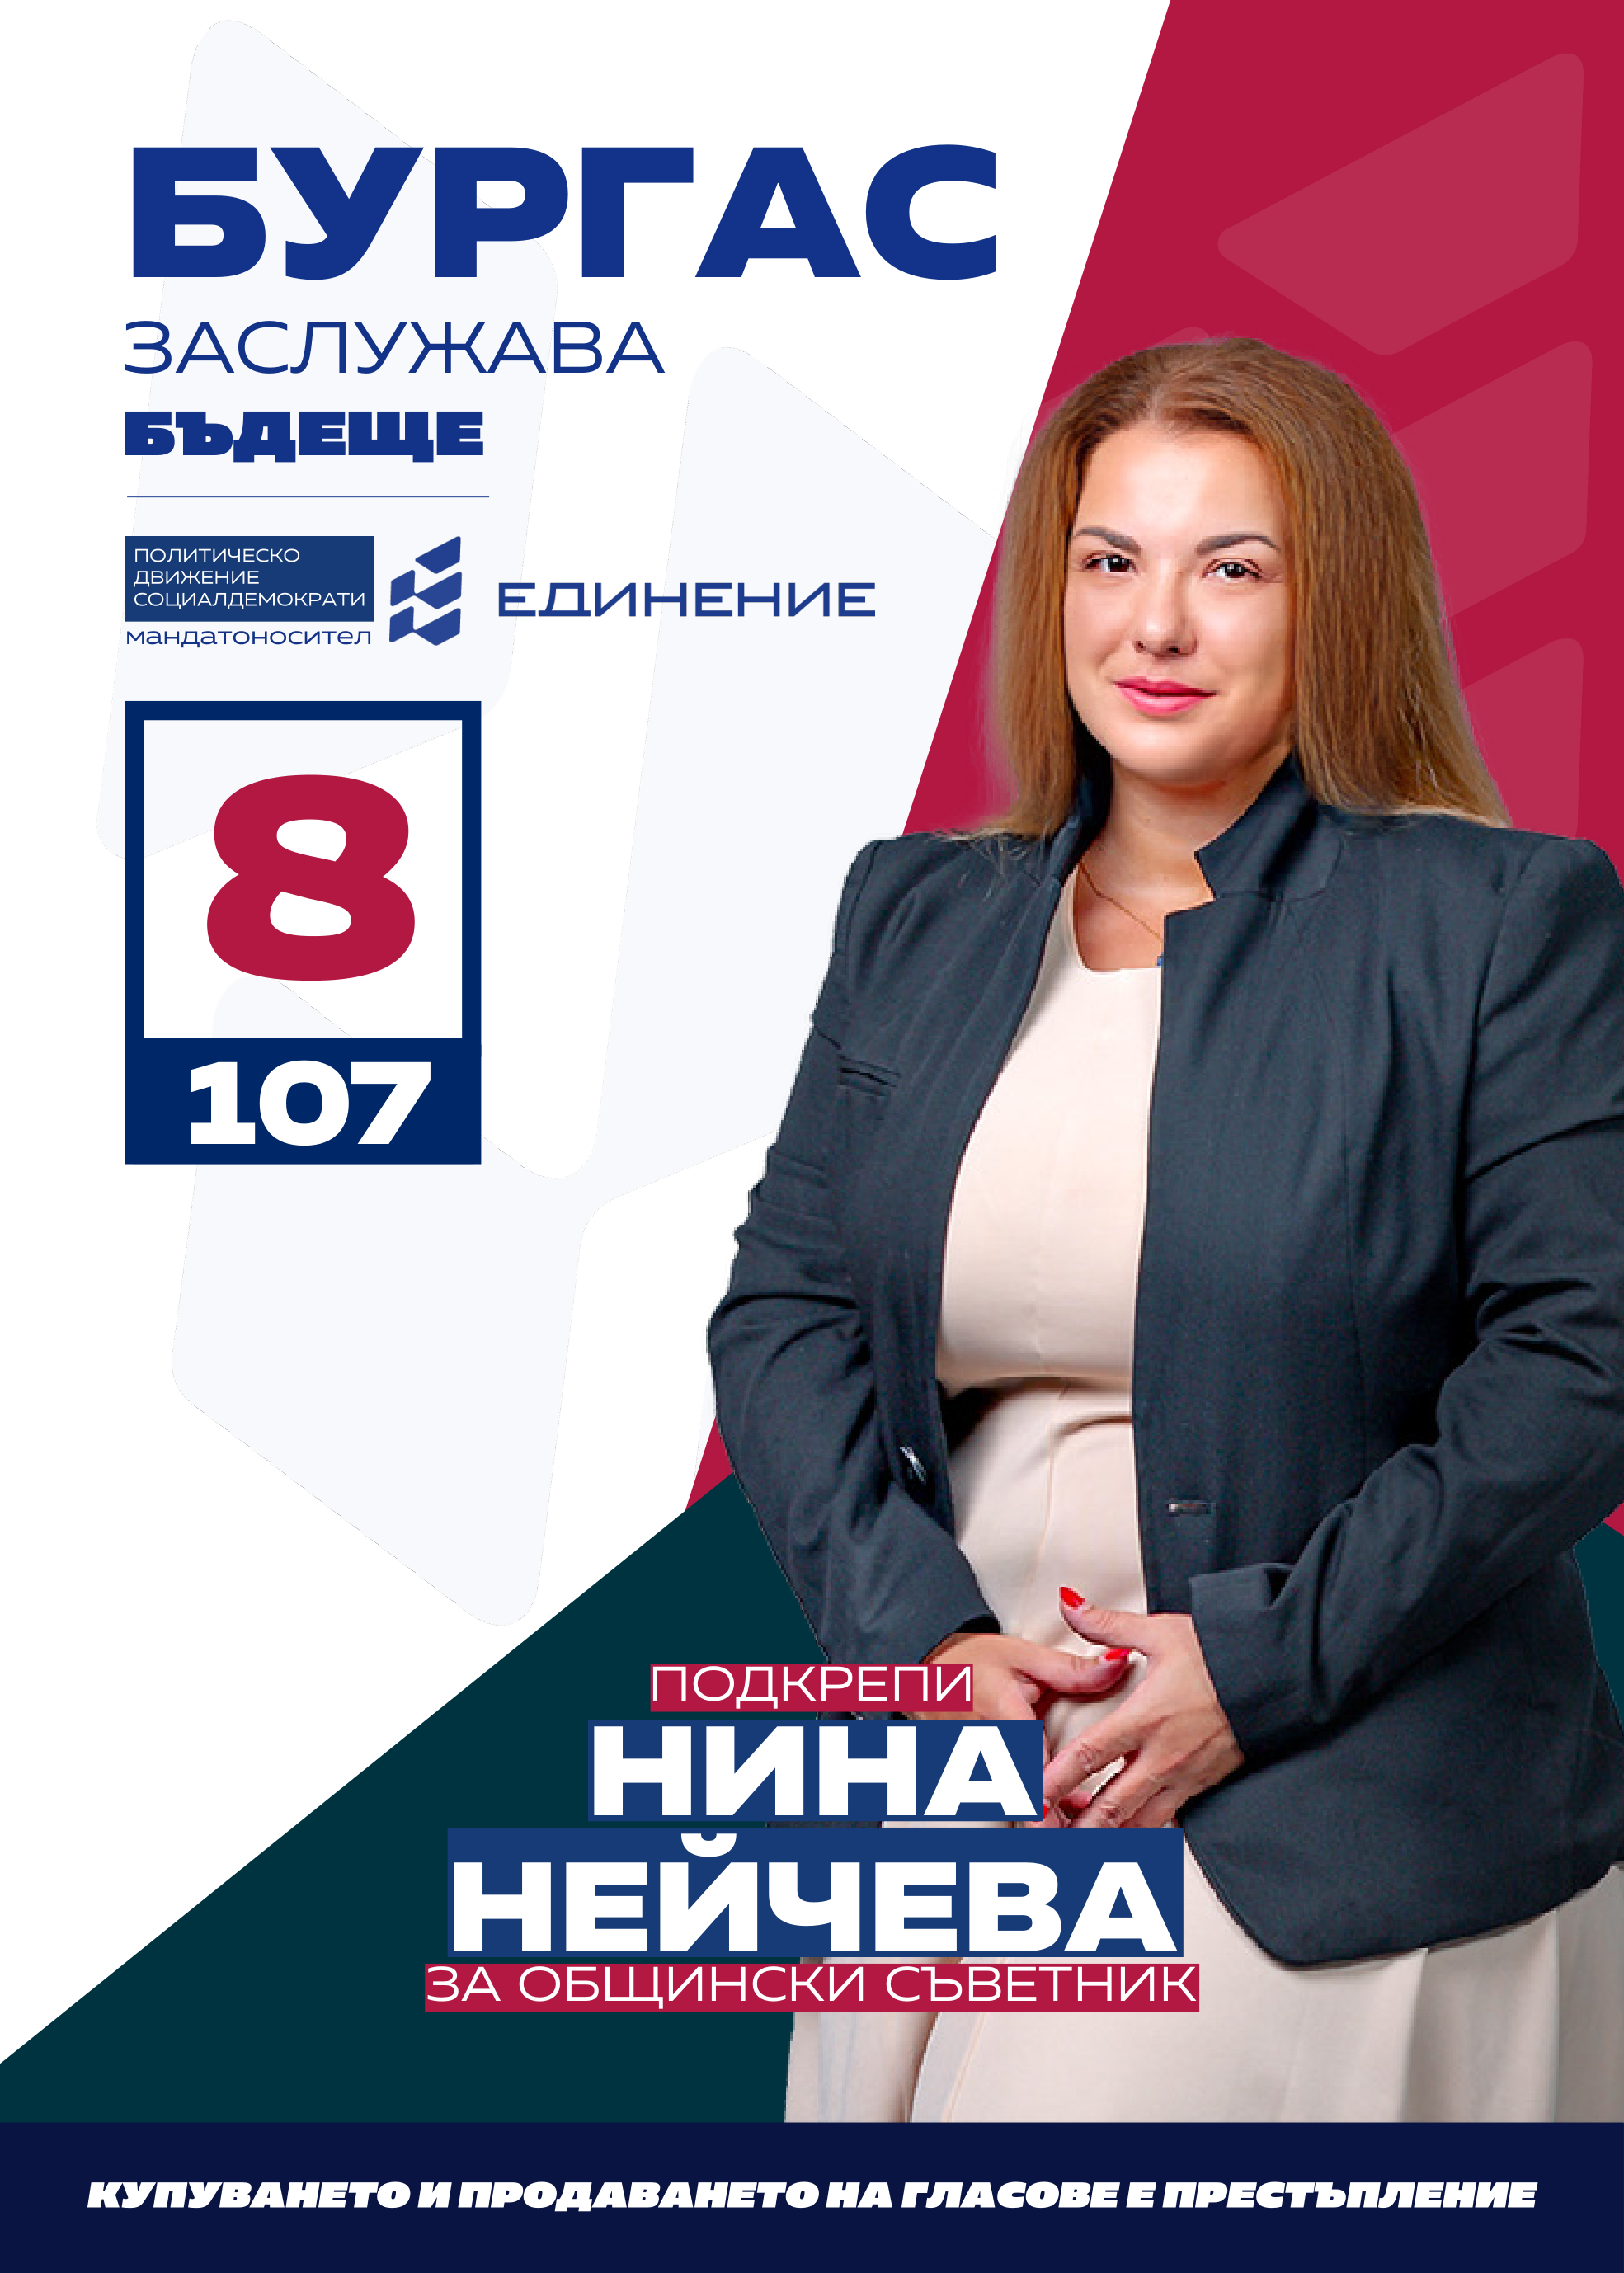 Нина Нейчева – журналист
Кандидатът за общински съветник Нина Нейчева ще